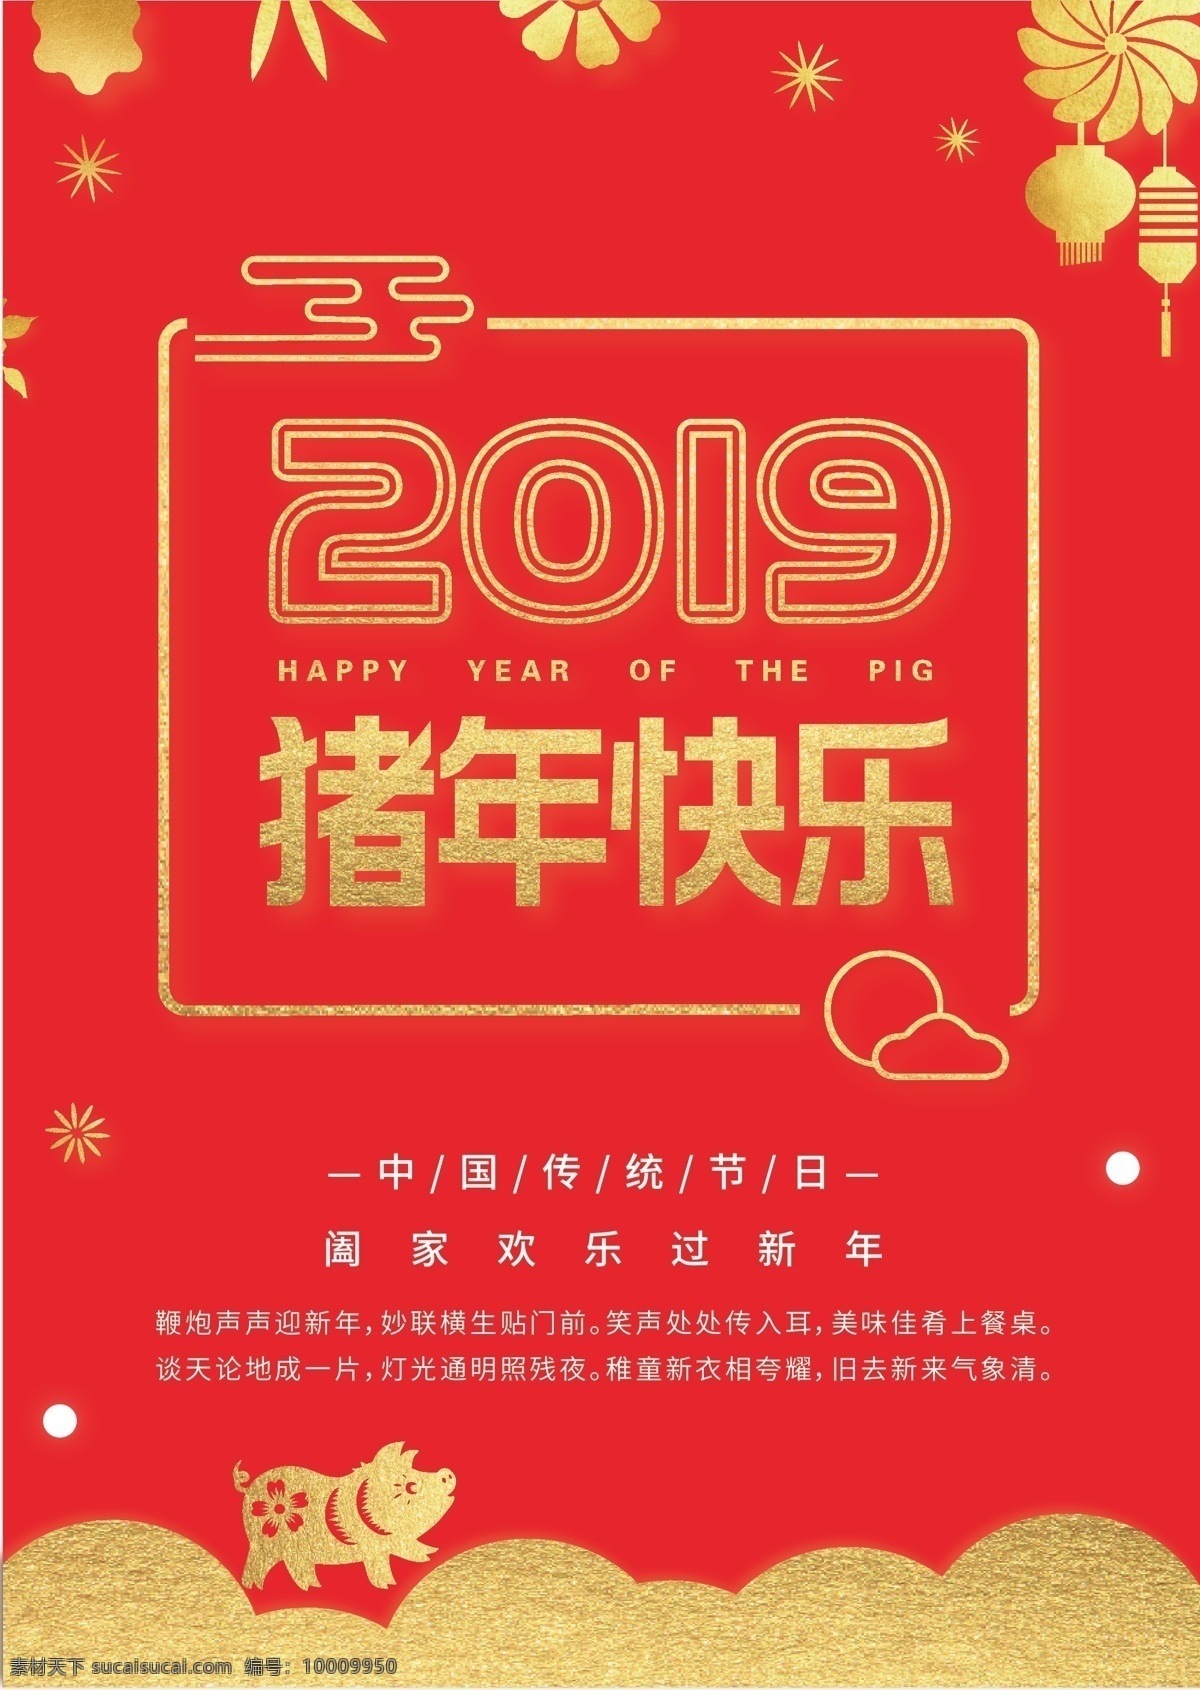 新年快乐海报 海报 红色背景 红色海报 猪年 2019 猪年快乐 红色 金色 新年 新年快乐